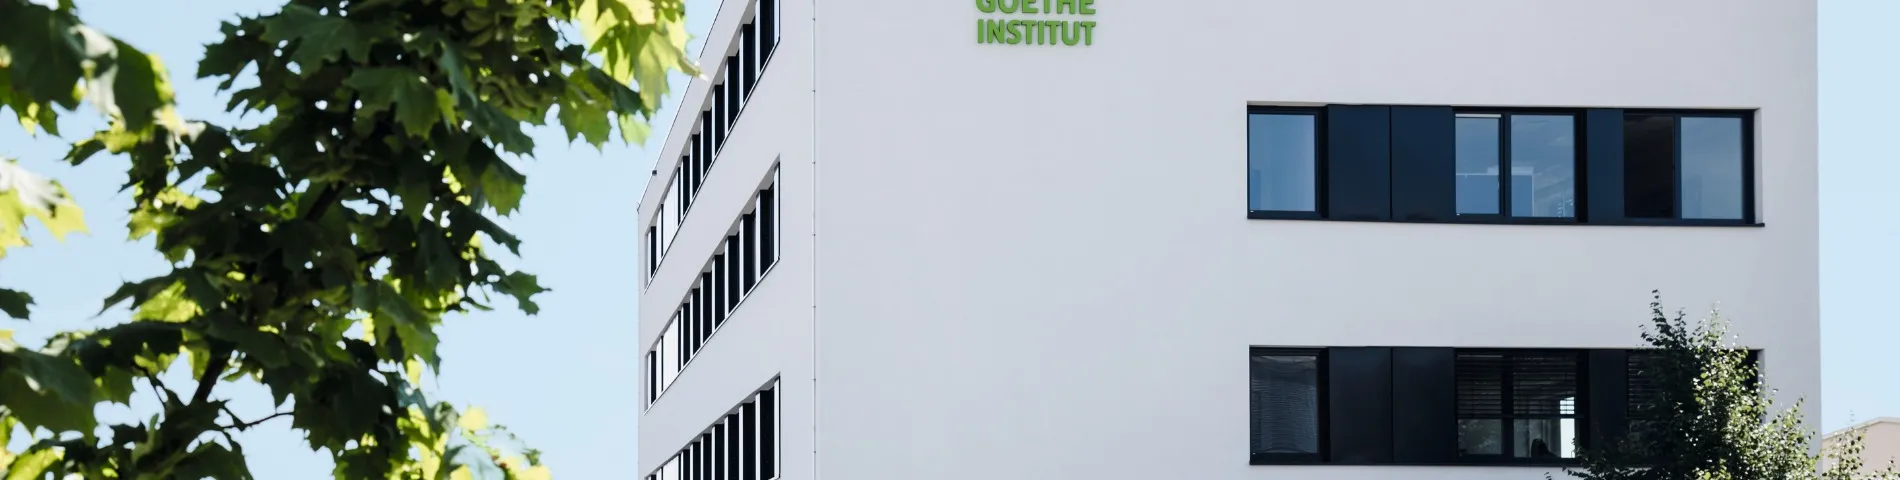 Goethe-Institut bilde 1